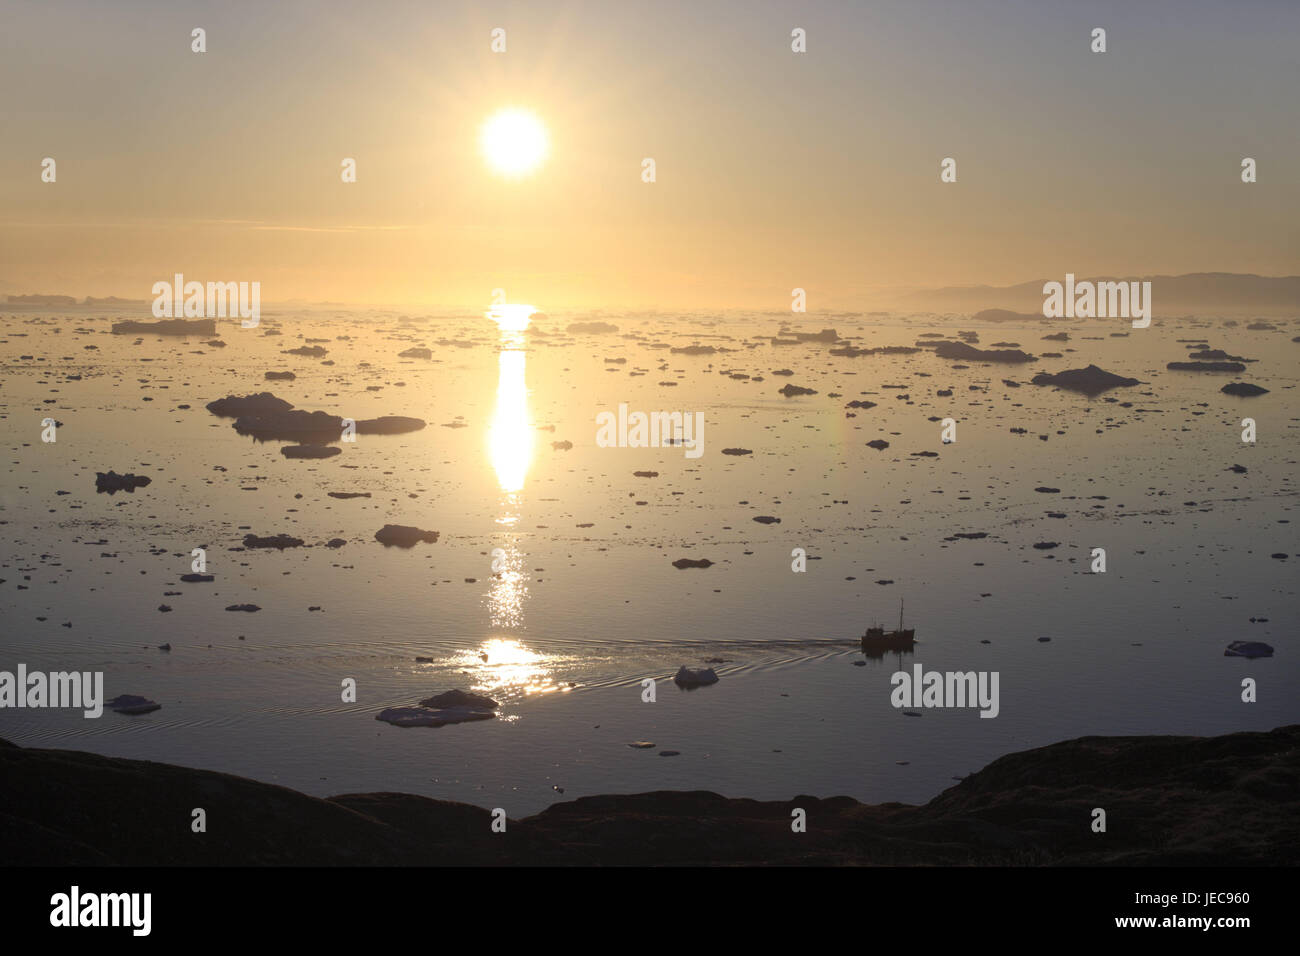 La Groenlandia, Discoteca Bay, Ilulissat, Fjord, drift ice, visualizzare il sole di mezzanotte, luce posteriore, Groenlandia occidentale, ghiaccio, ghiacciaio, ghiacciaio, l'Artico, estate, solitudine, deserte, ghiacciaio terminazione anomala, natura, cambiamenti climatici, mirroring, superficie di acqua, costa, barca, il sole, Foto Stock